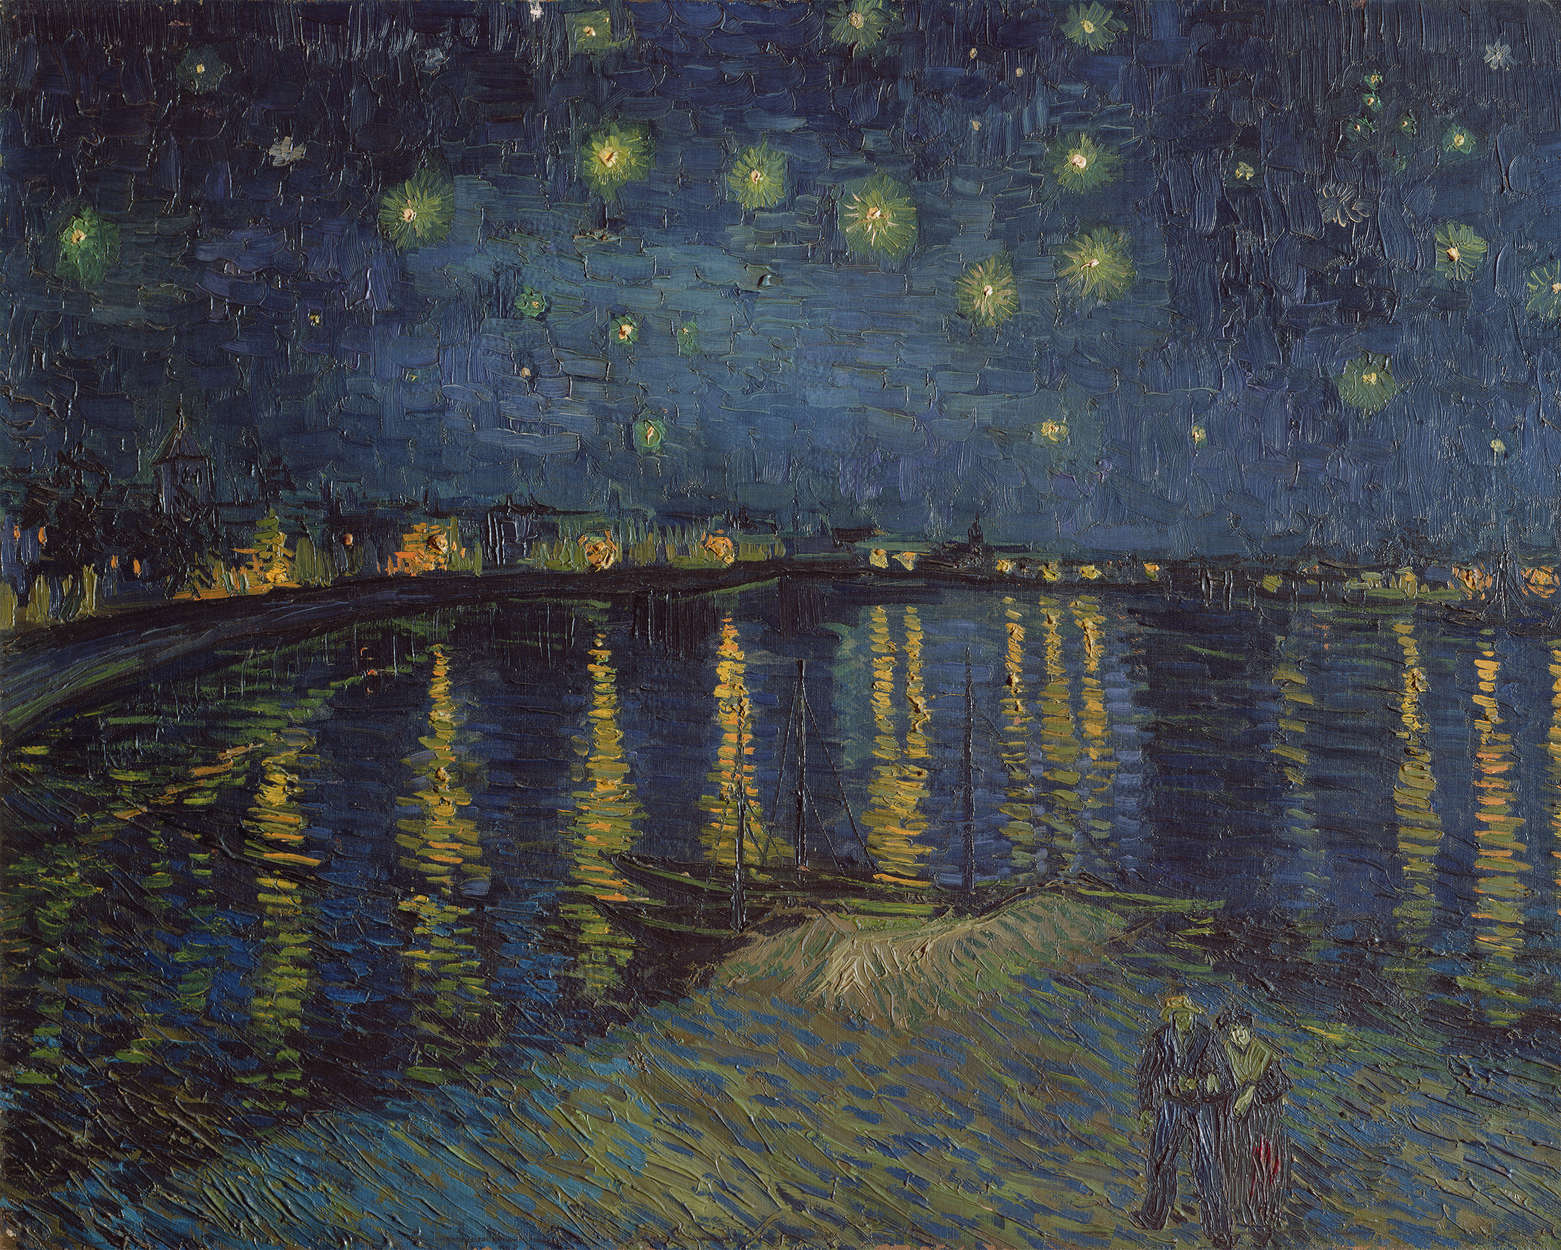             Mural "Noche estrellada sobre el Ródano" de Vincent van Gogh
        